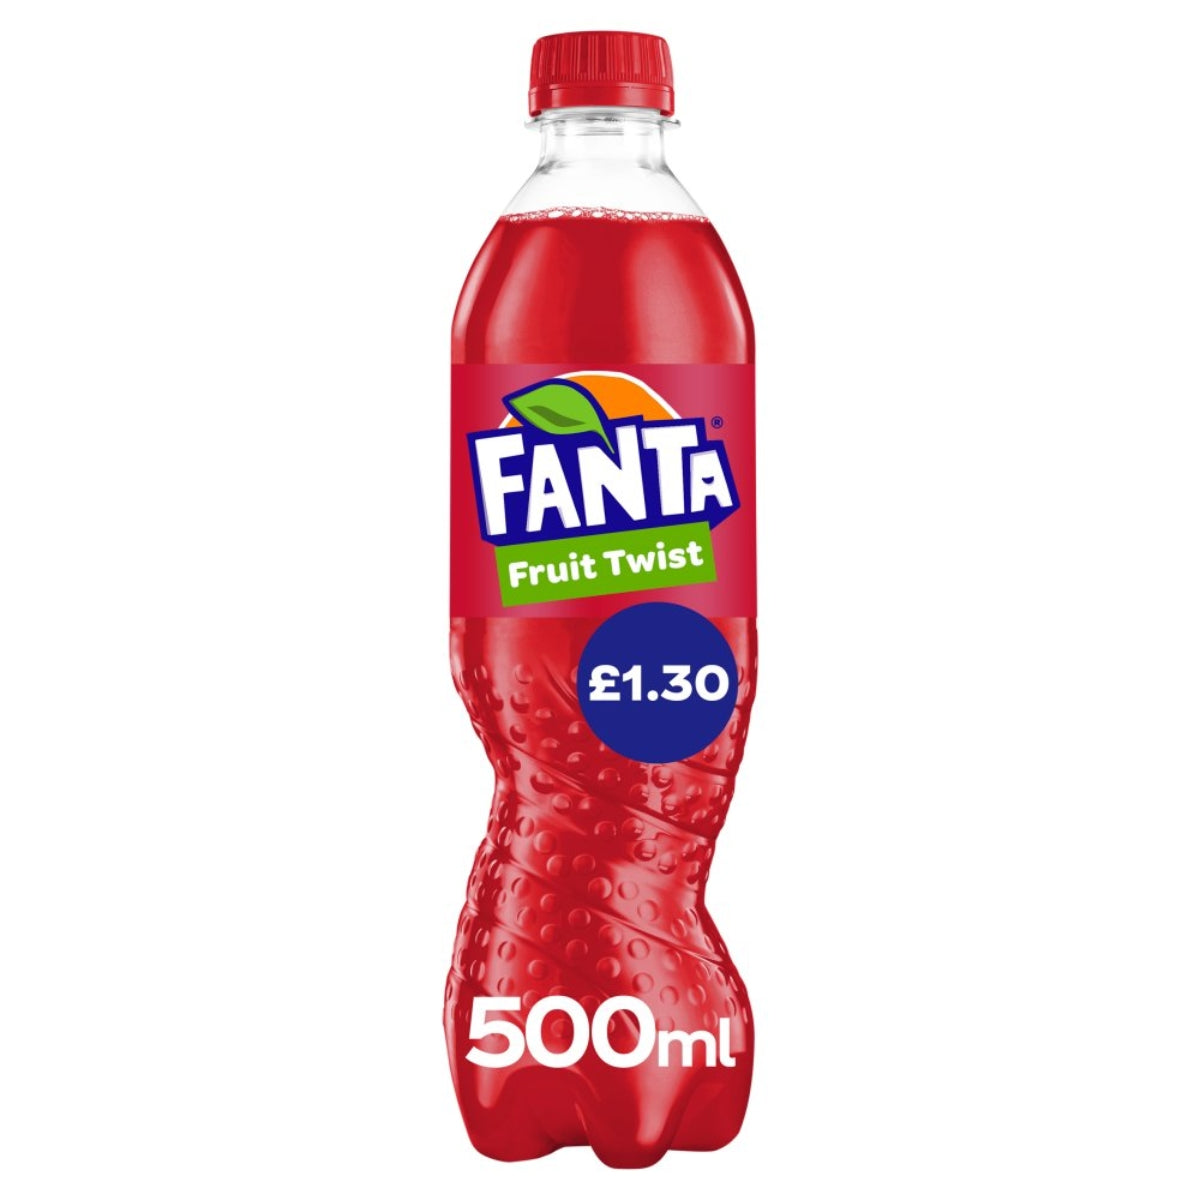 Fanta - Fruit Twist - 500ml.